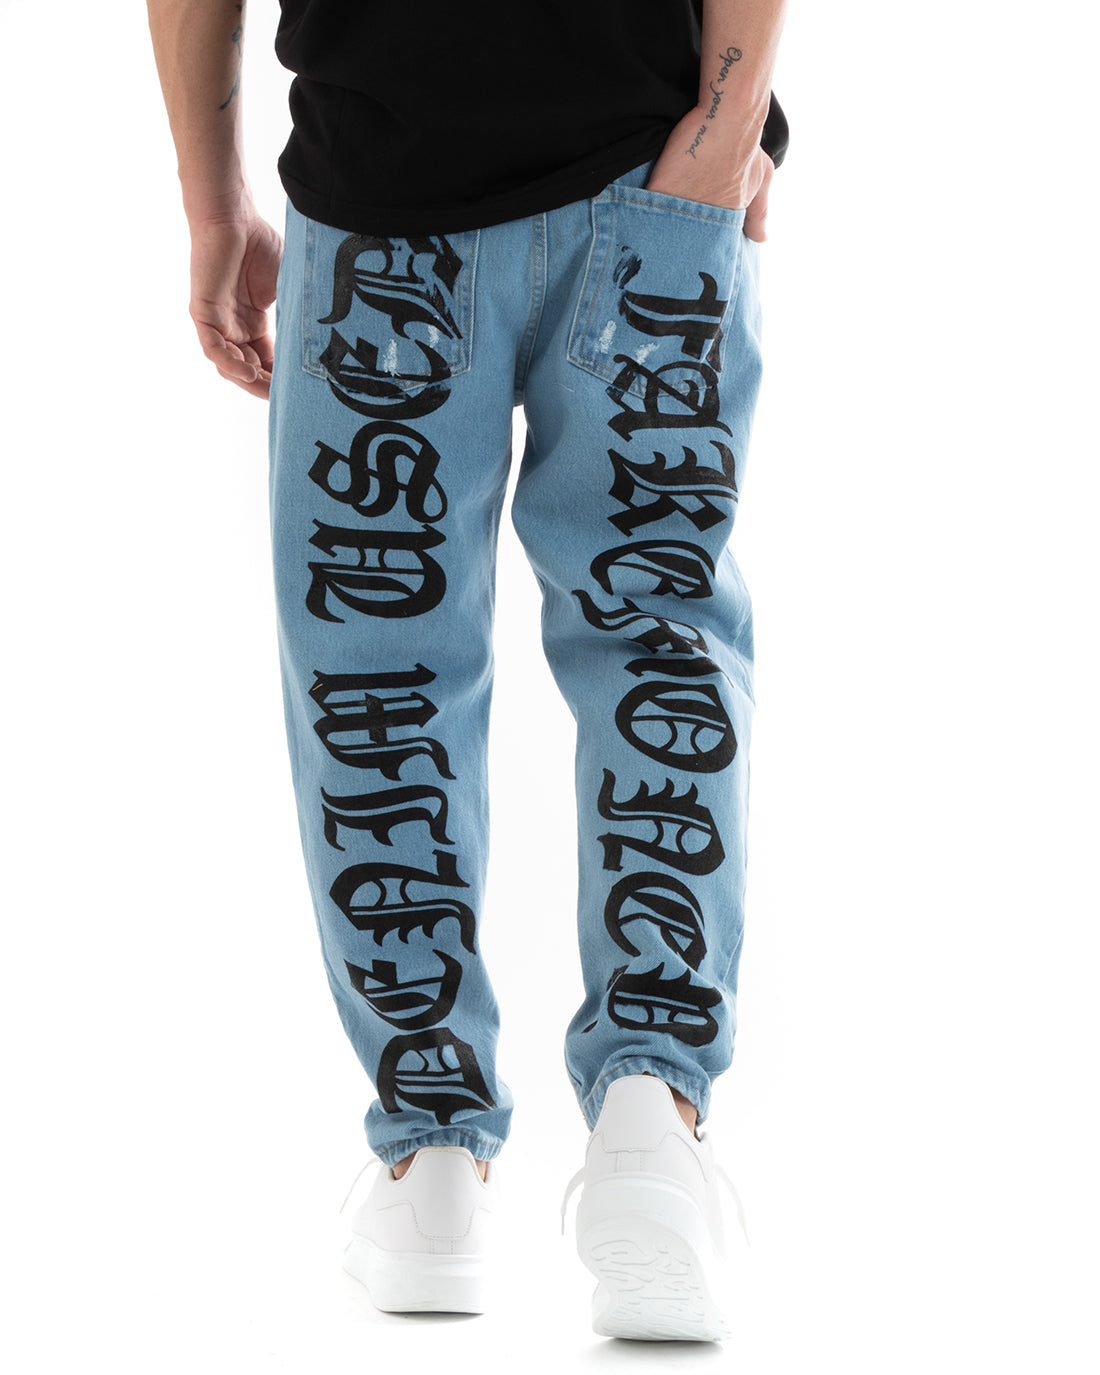 Pantaloni Jeans Denim Uomo Loose Fit Cinque Tasche Con Stampa GIOSAL-P5705A